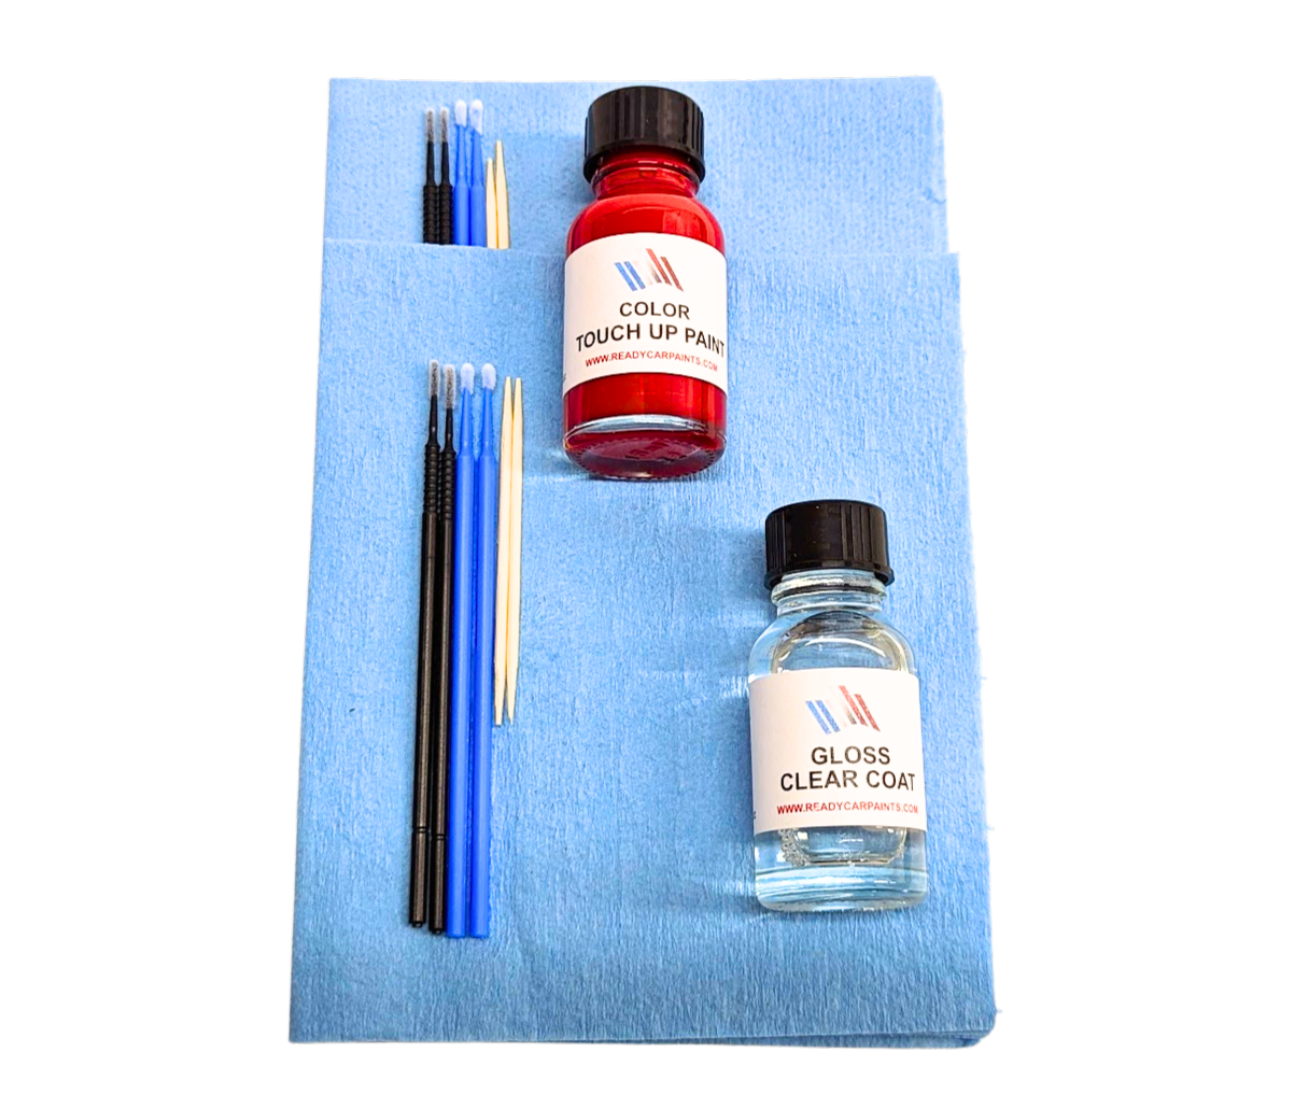 LEXUS 8U9 Cerulean Blue Metallic Touch Up Paint Kit 100% OEM Color Match